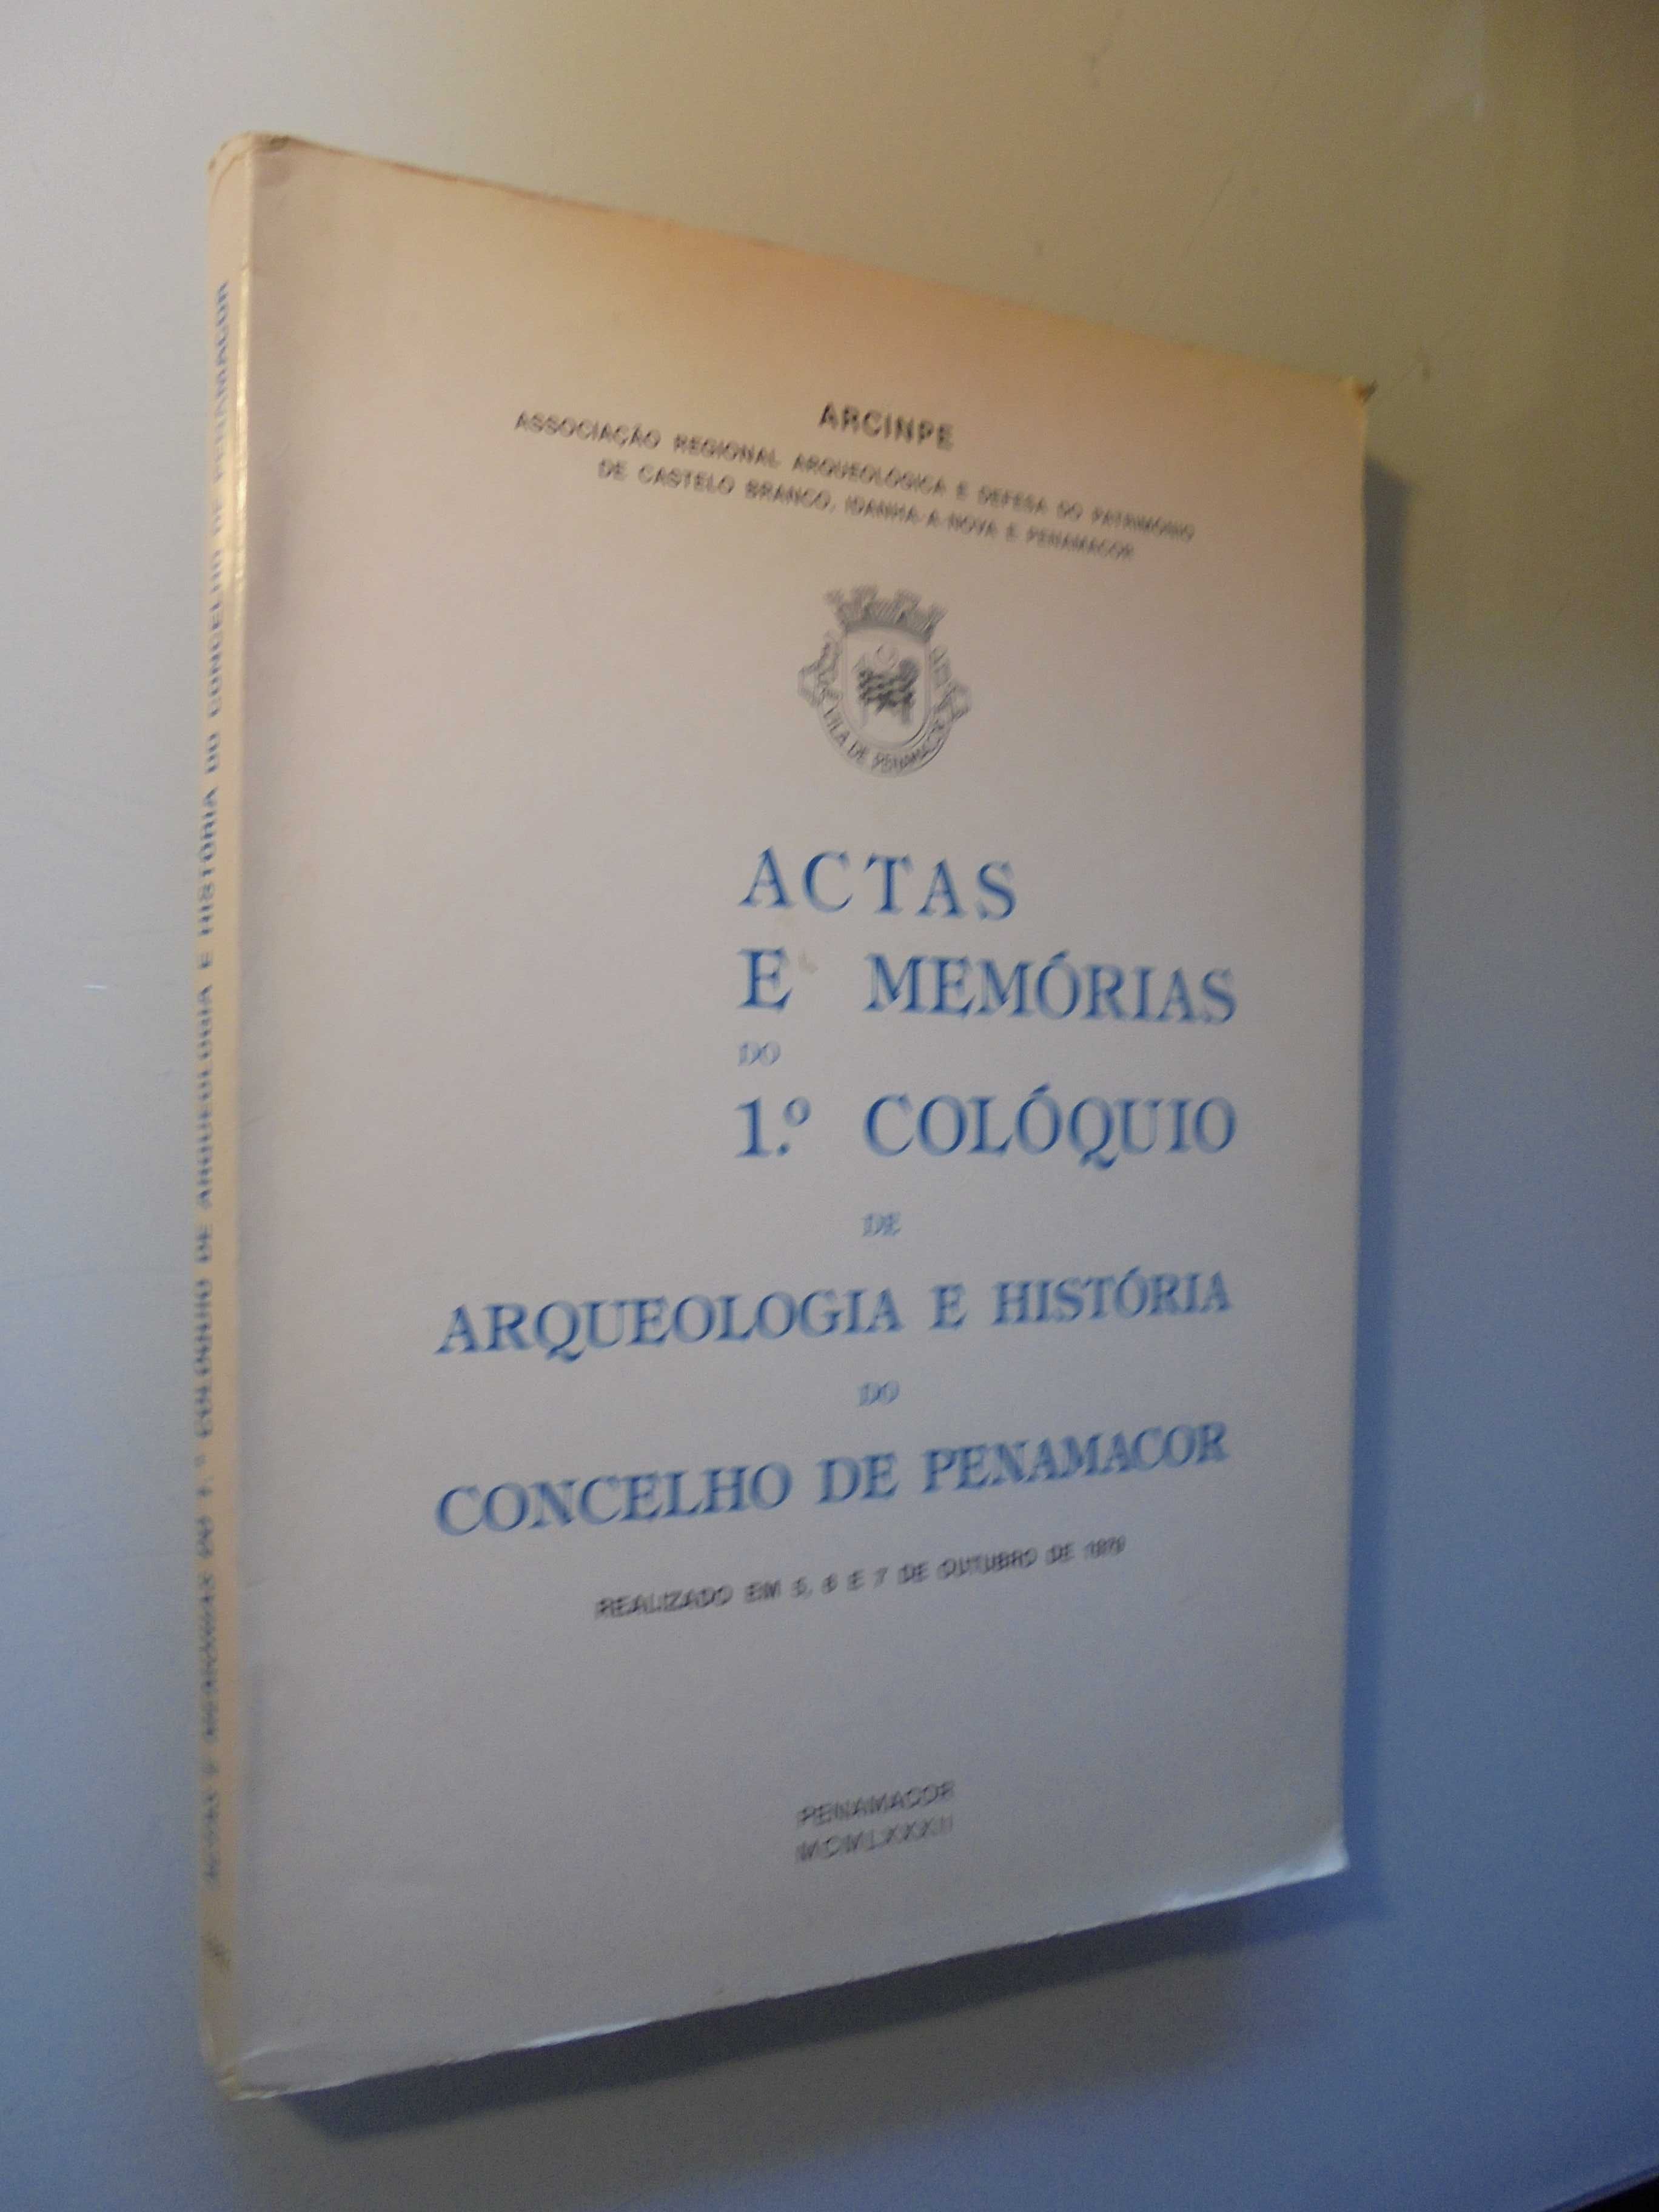 Penamacor-Actas-Arqueologia e História,1982